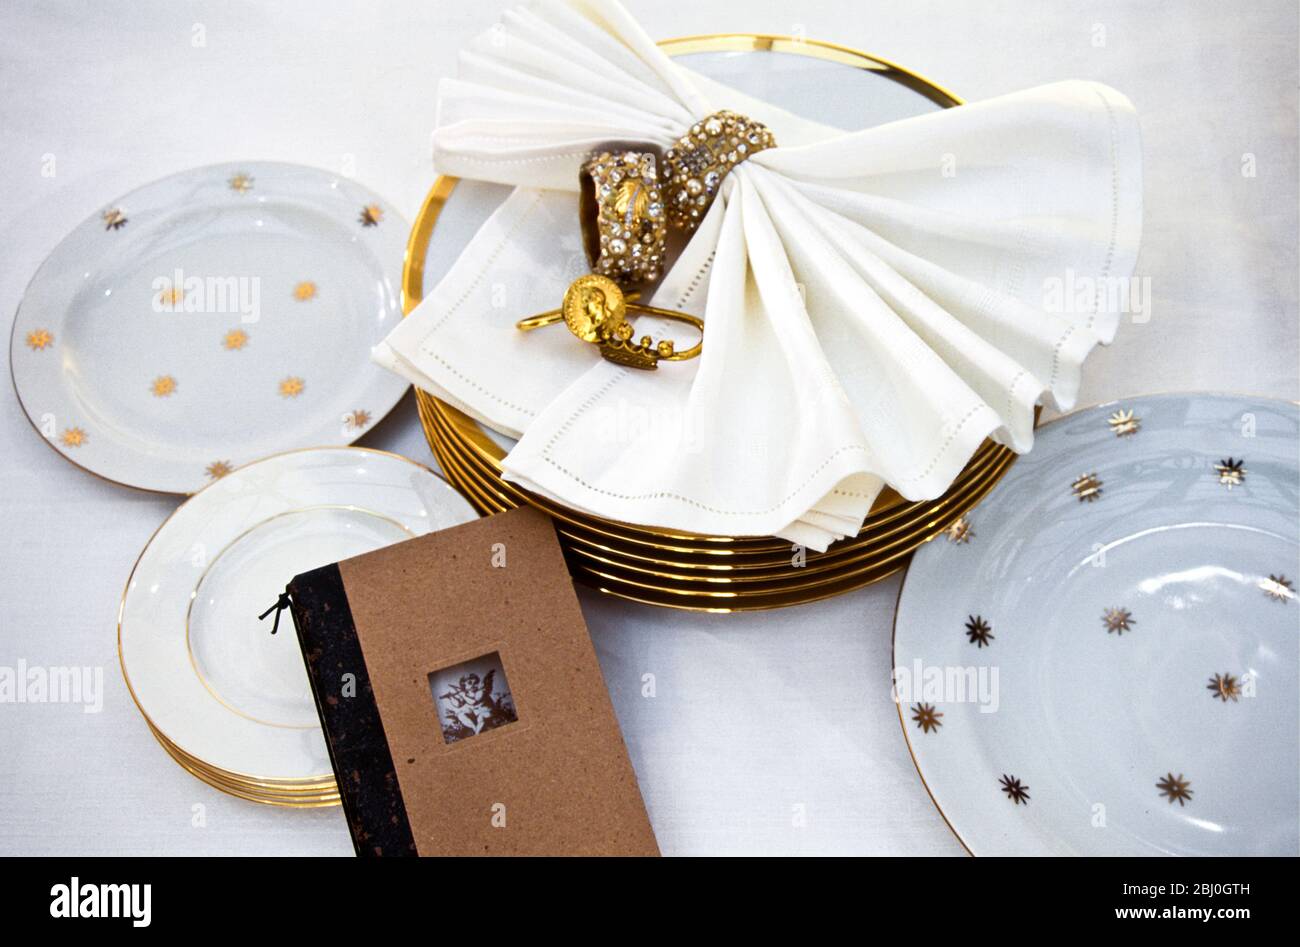 Vajilla y accesorios para poner una bonita mesa para bodas o fiestas - Foto de stock